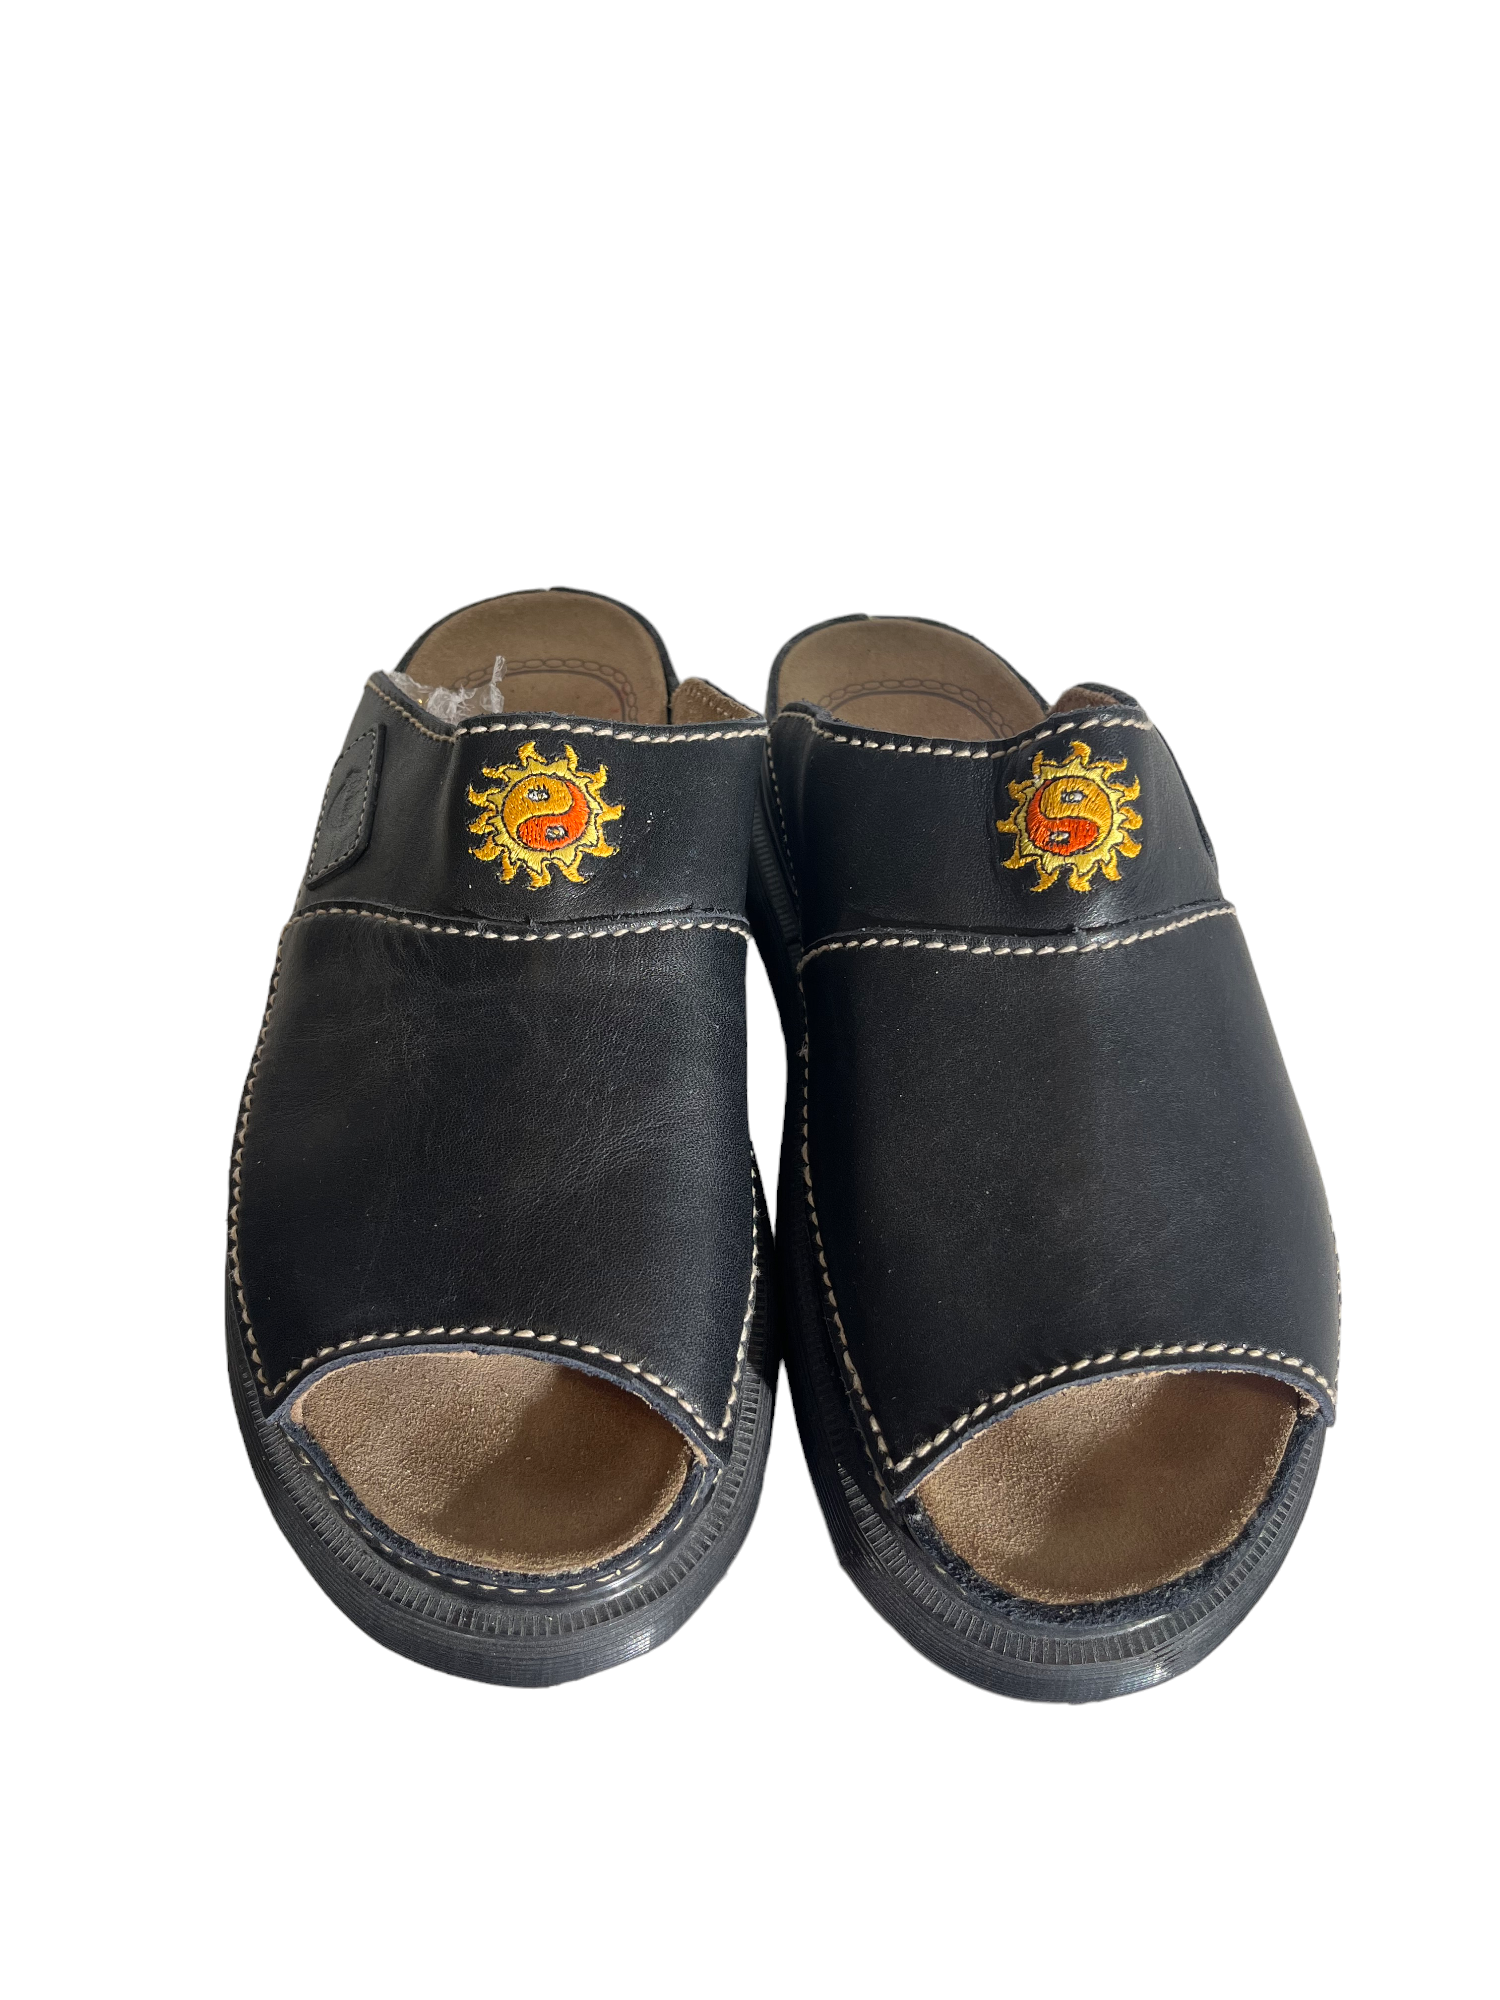 Yinyang Sun Doc Marten Platform Sandals